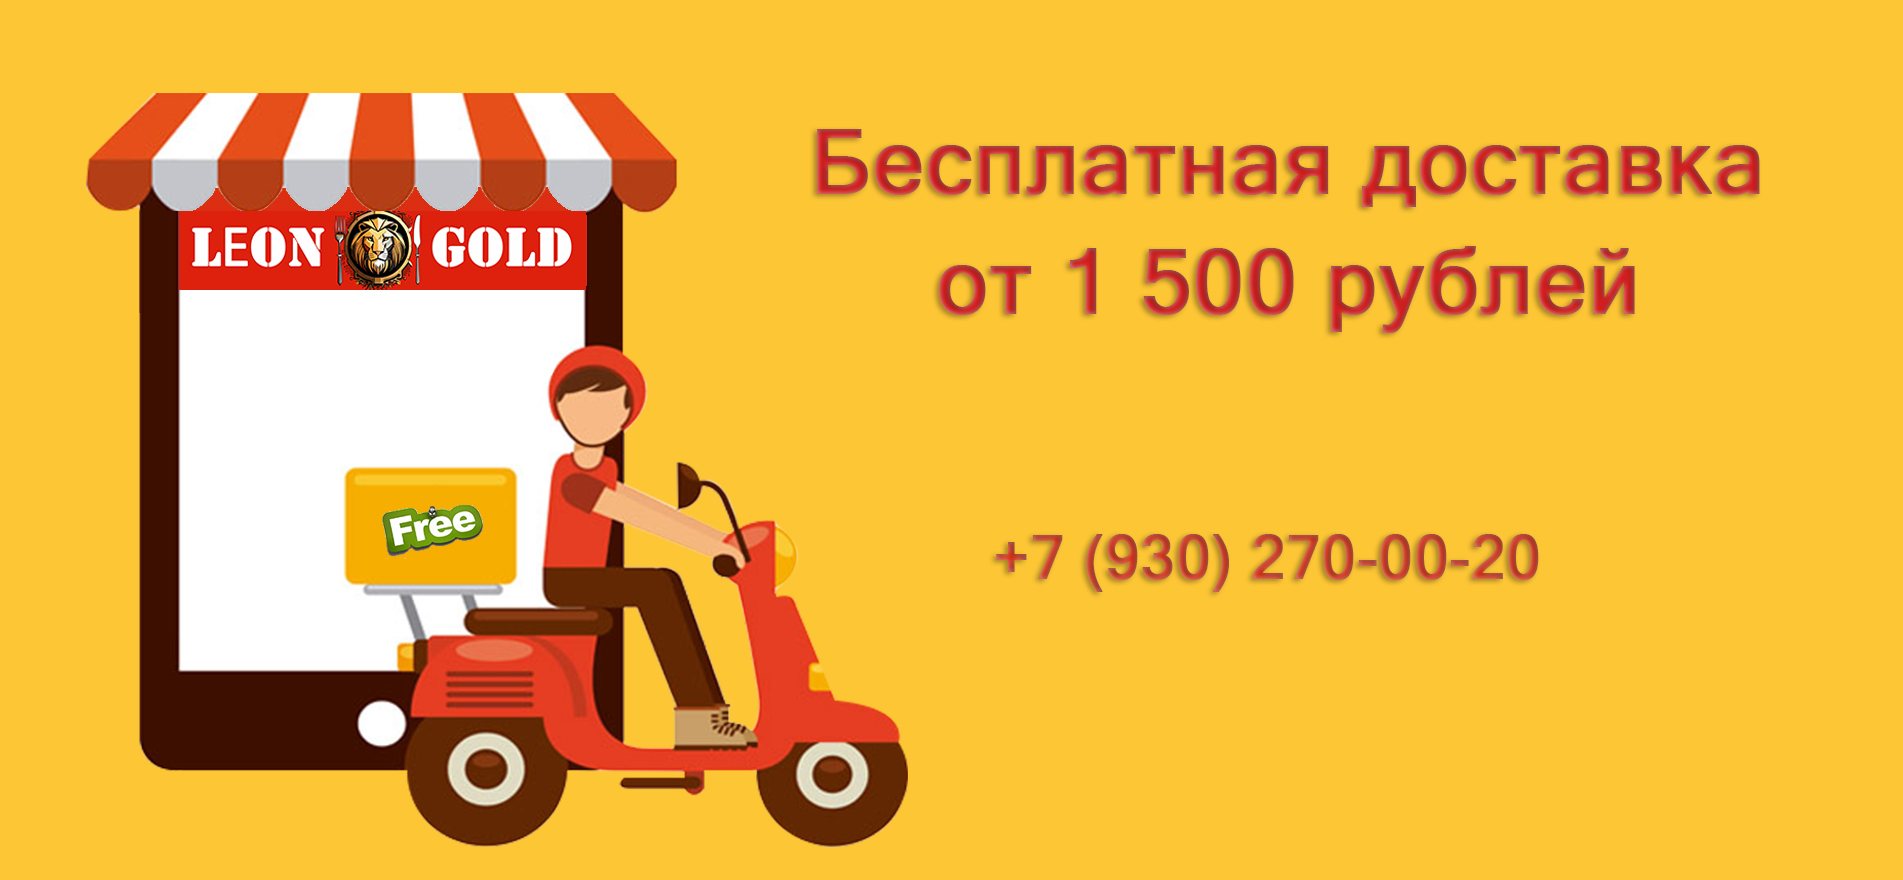 Бесплатная доставка от 1500 рублей